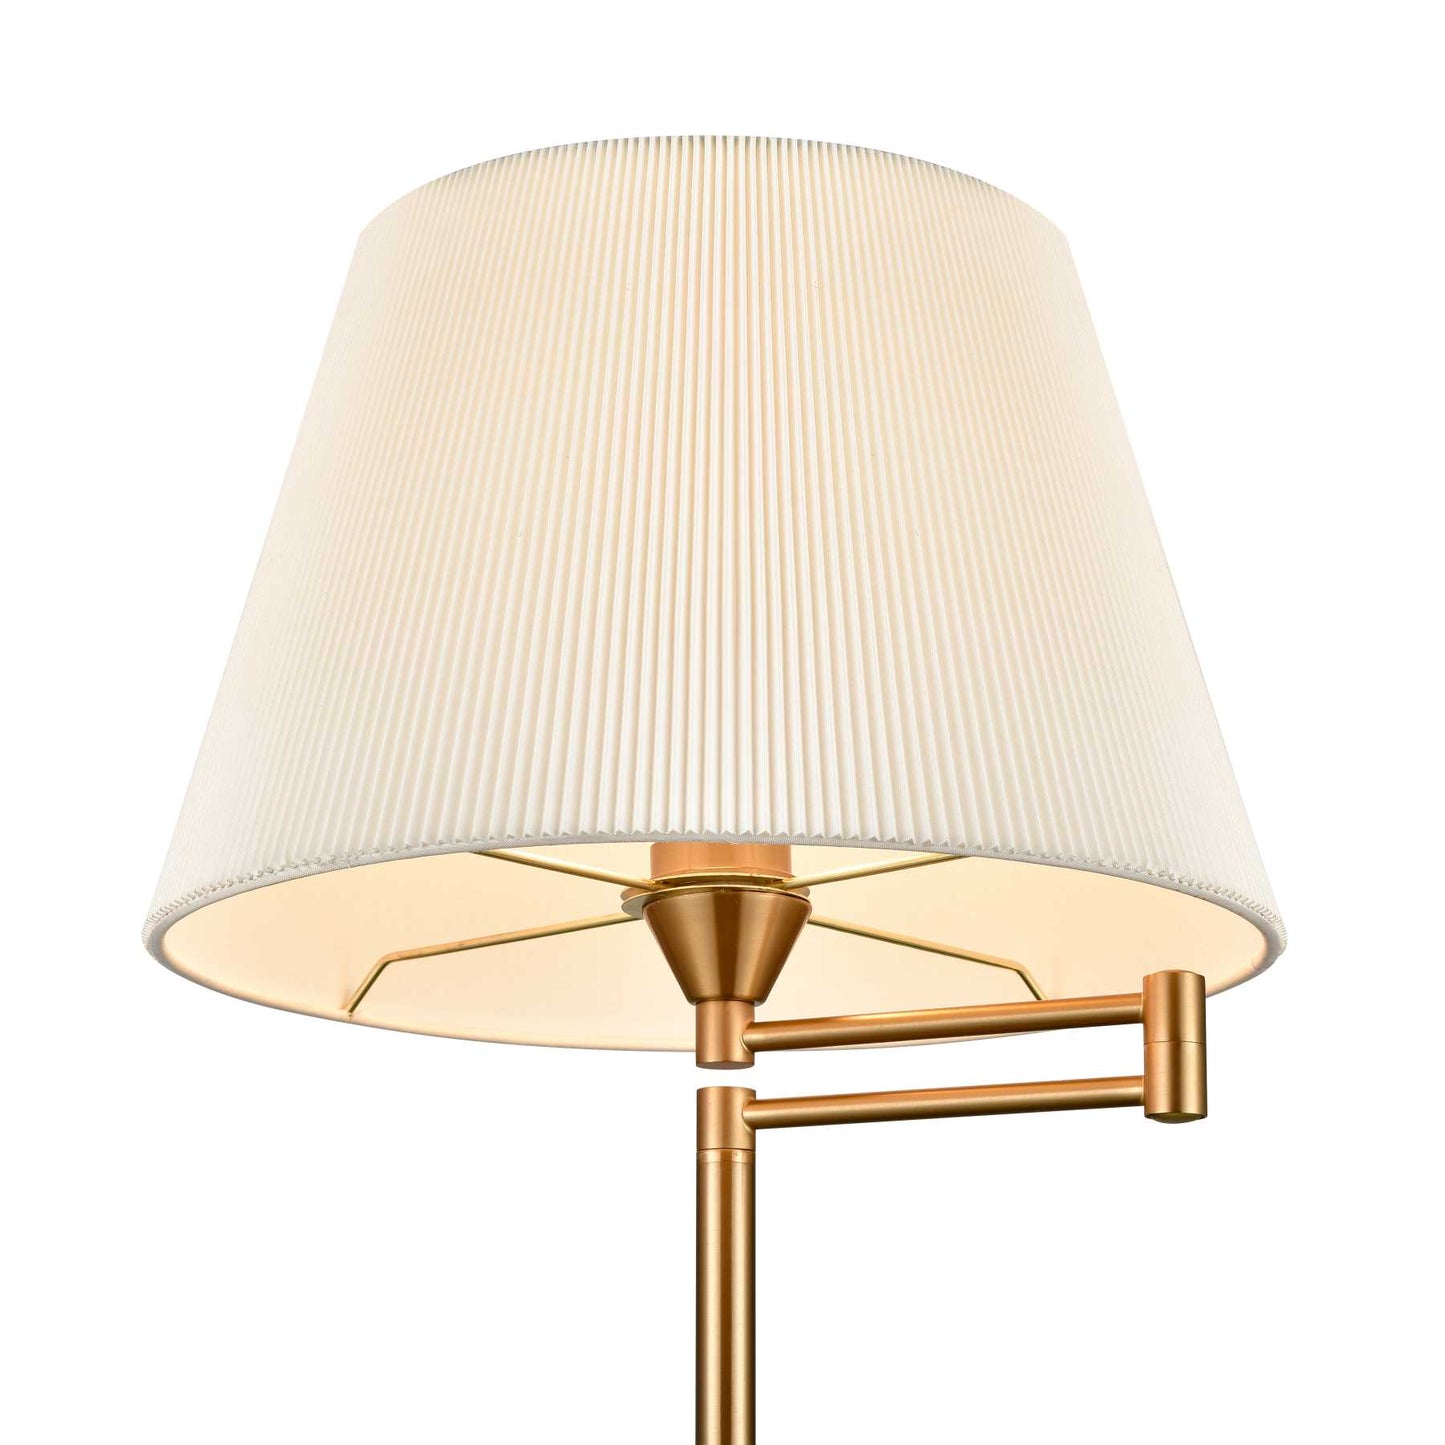 Scope 65'' High 1-Light Floor Lamp - Aged Brass By ELK |Floor Lamps |Modishstore - 6